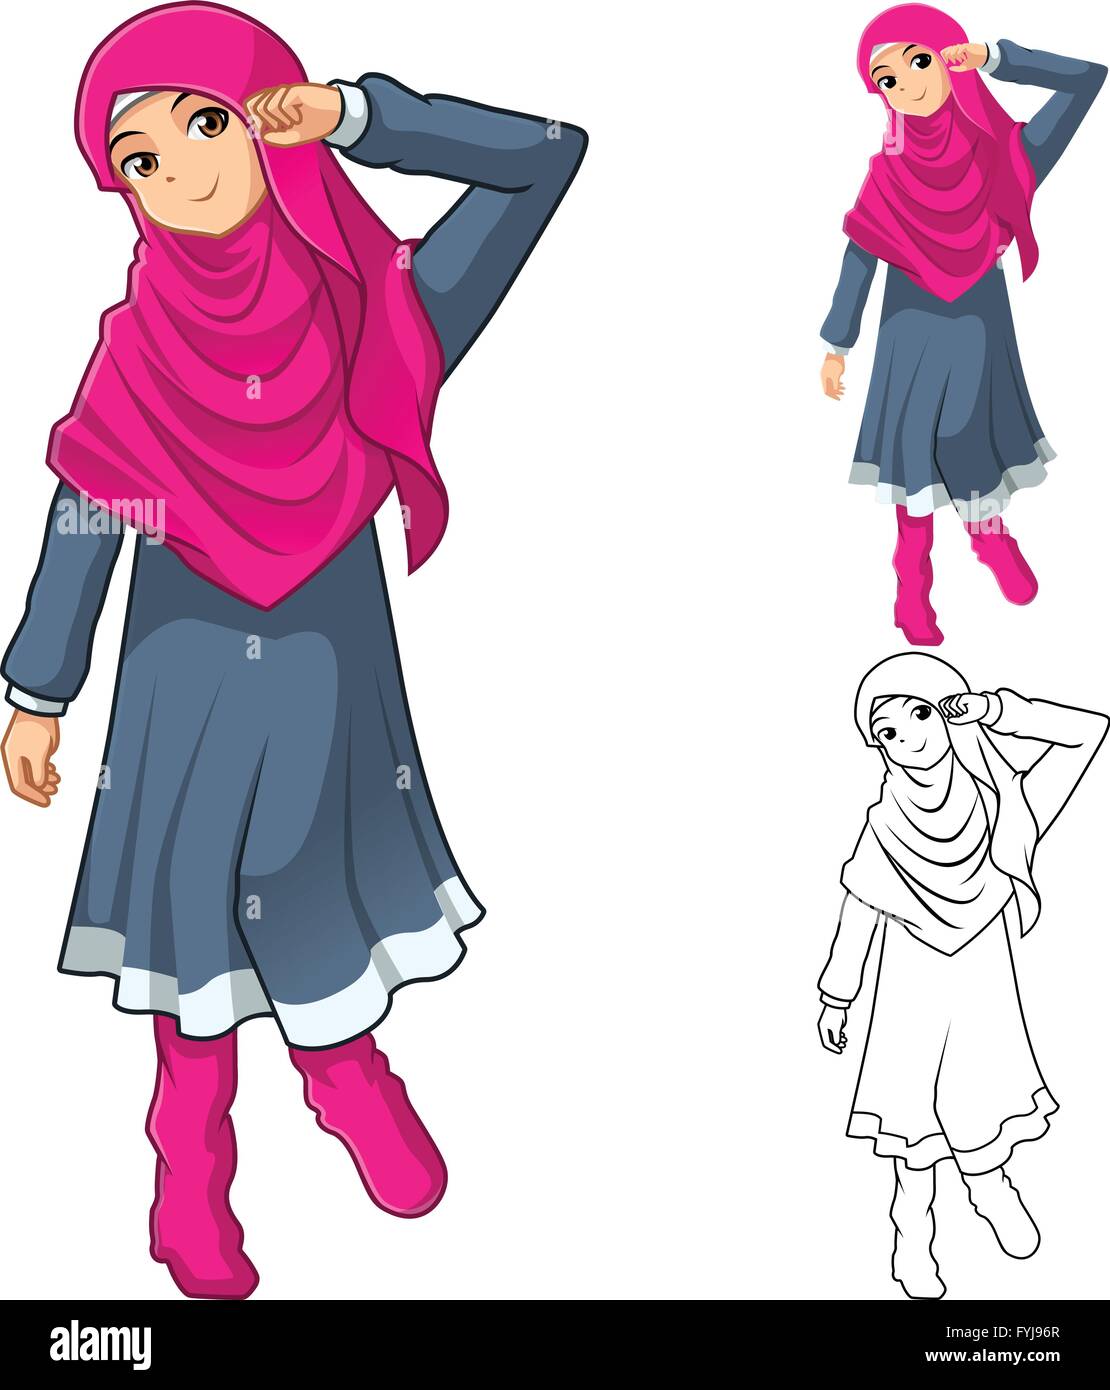 Muslimisches Mädchen Mode tragen rosa Schleier oder Schal mit Kleid und Schuhe gehören flache Bauweise und skizziert Version Cartoon Charakter Stock Vektor